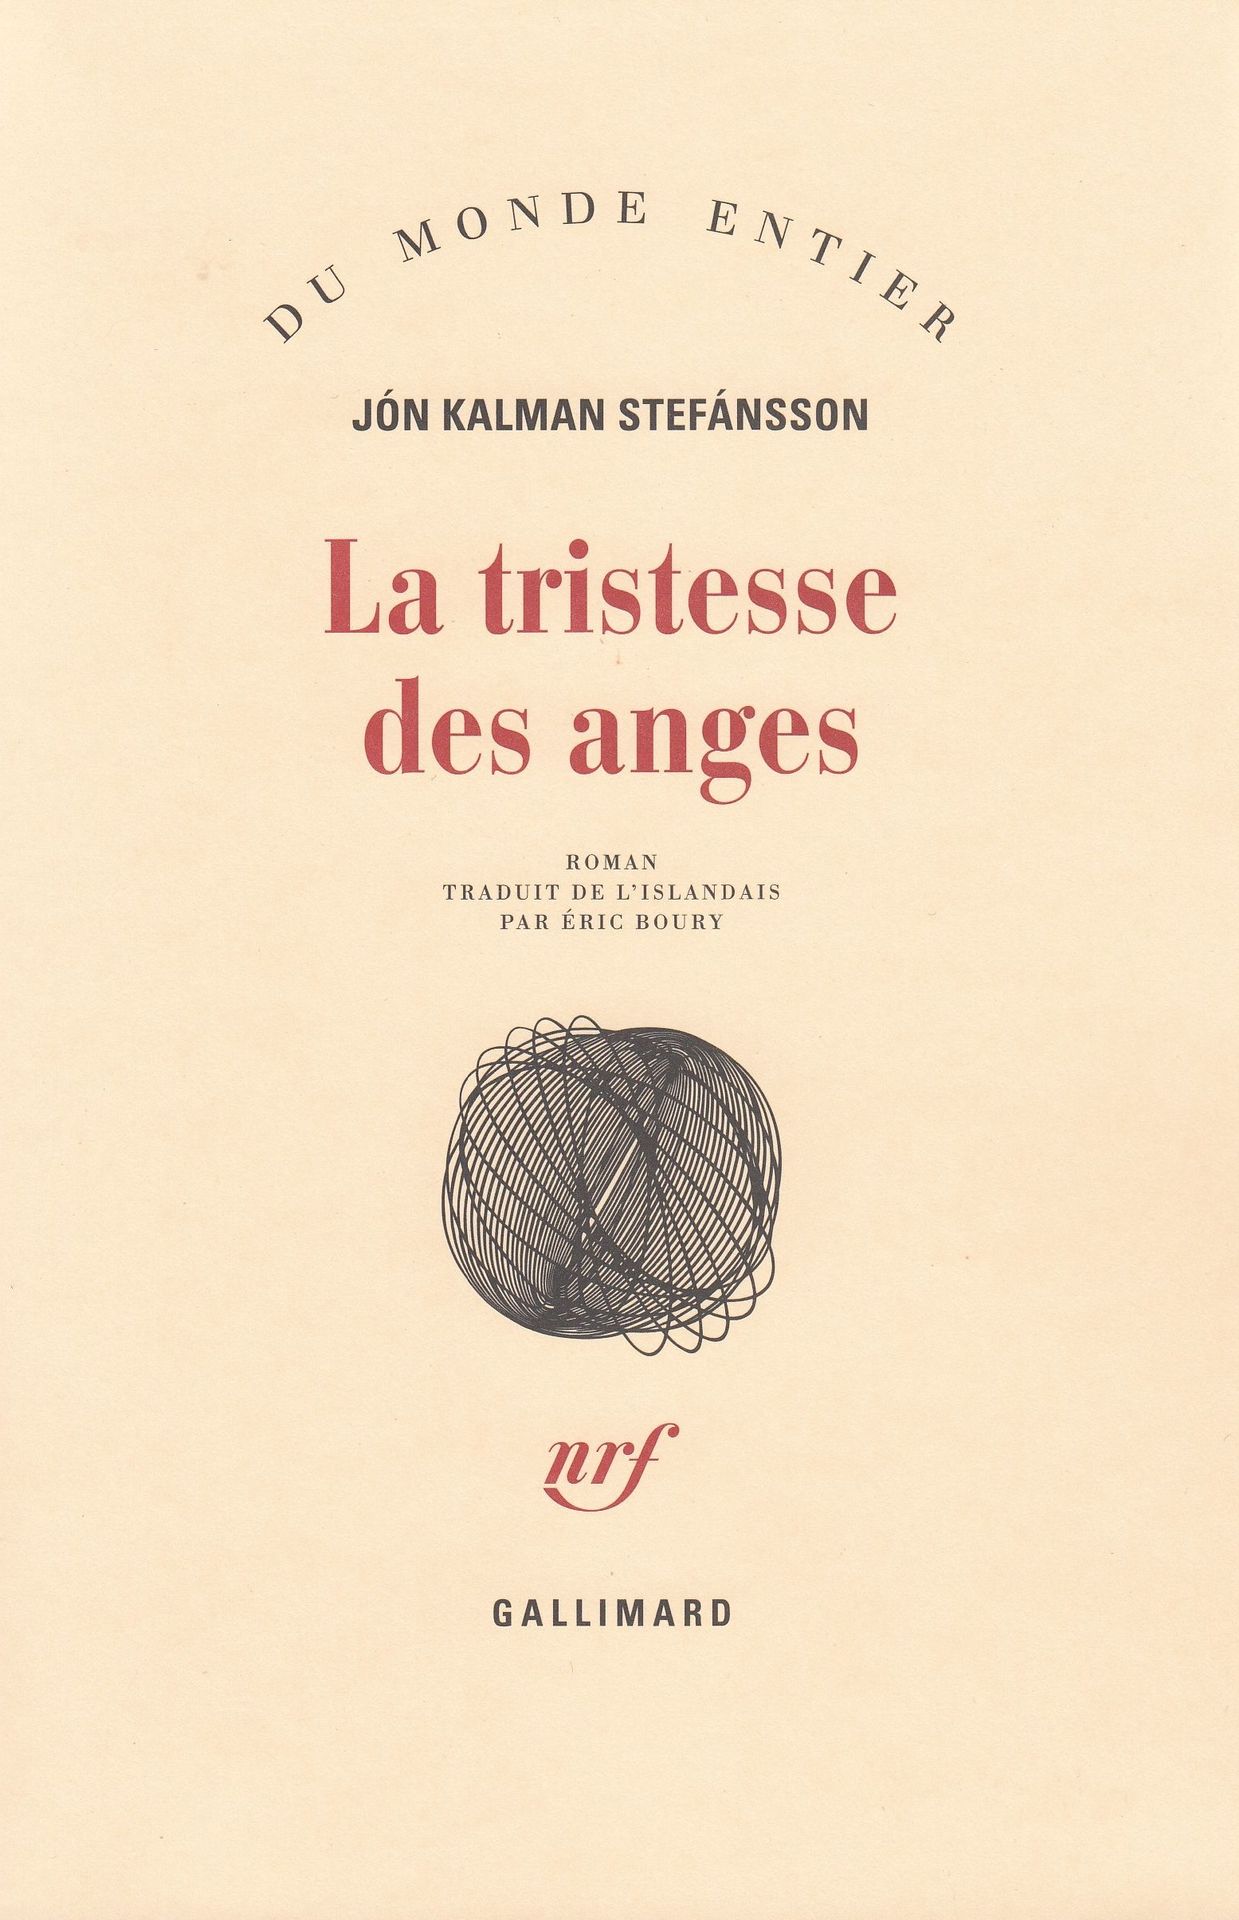 Première de couverture du roman "La tristesse des anges" de Jon Kalman Stefansson.